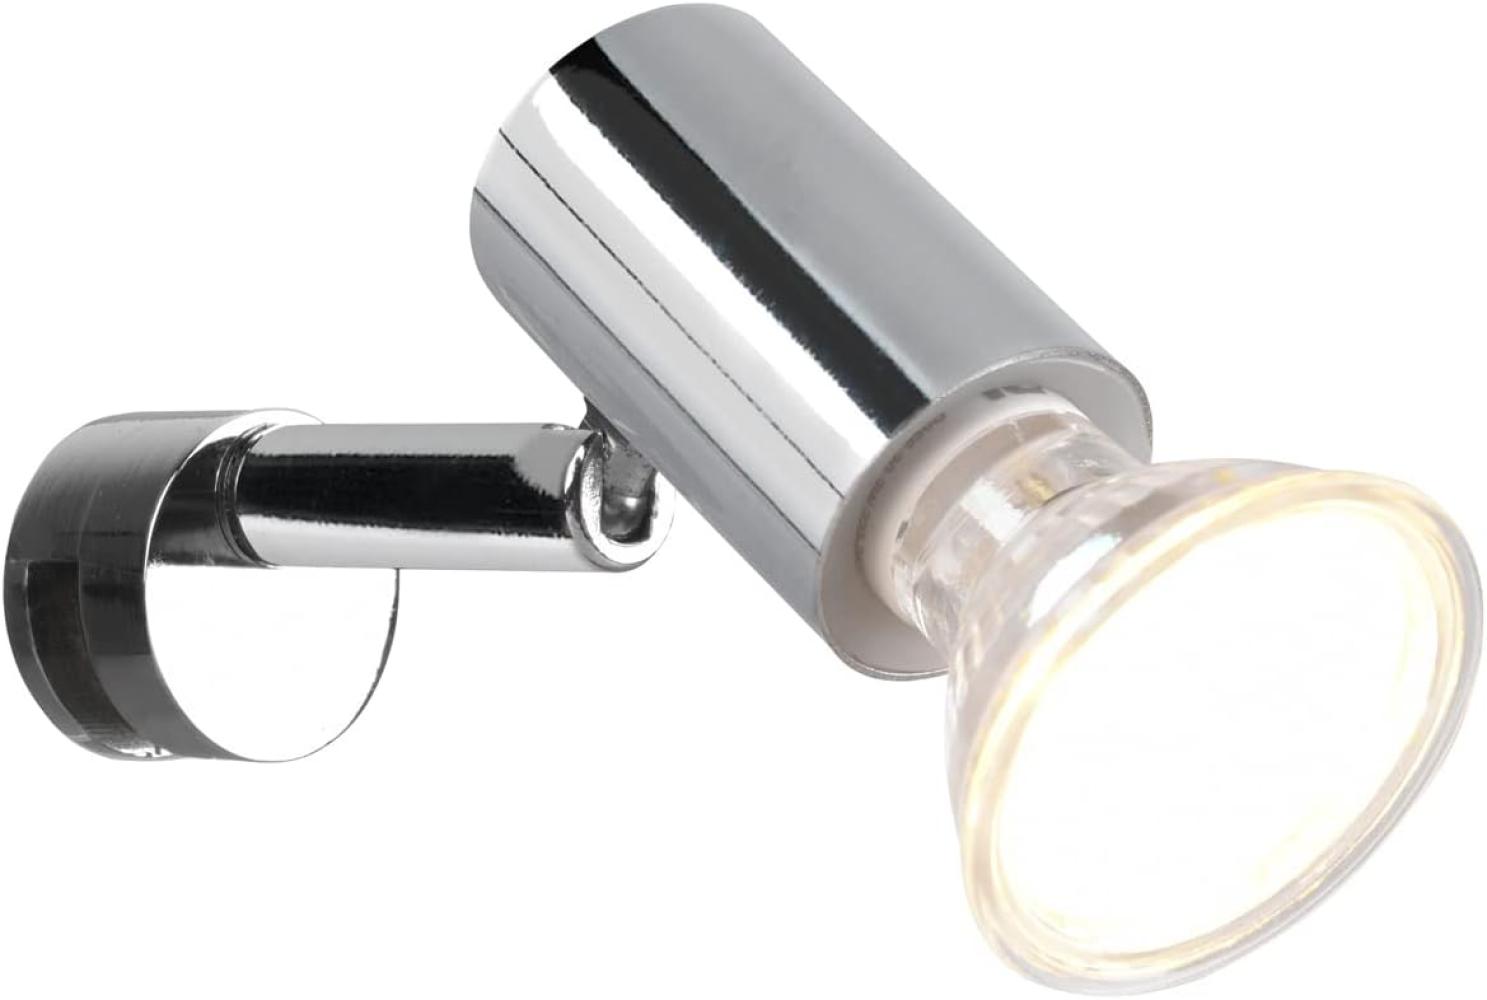 LED Badezimmerlampe dimmbar Chrom - Spiegelklemmleuchte mit schwenkbarem Spot Bild 1